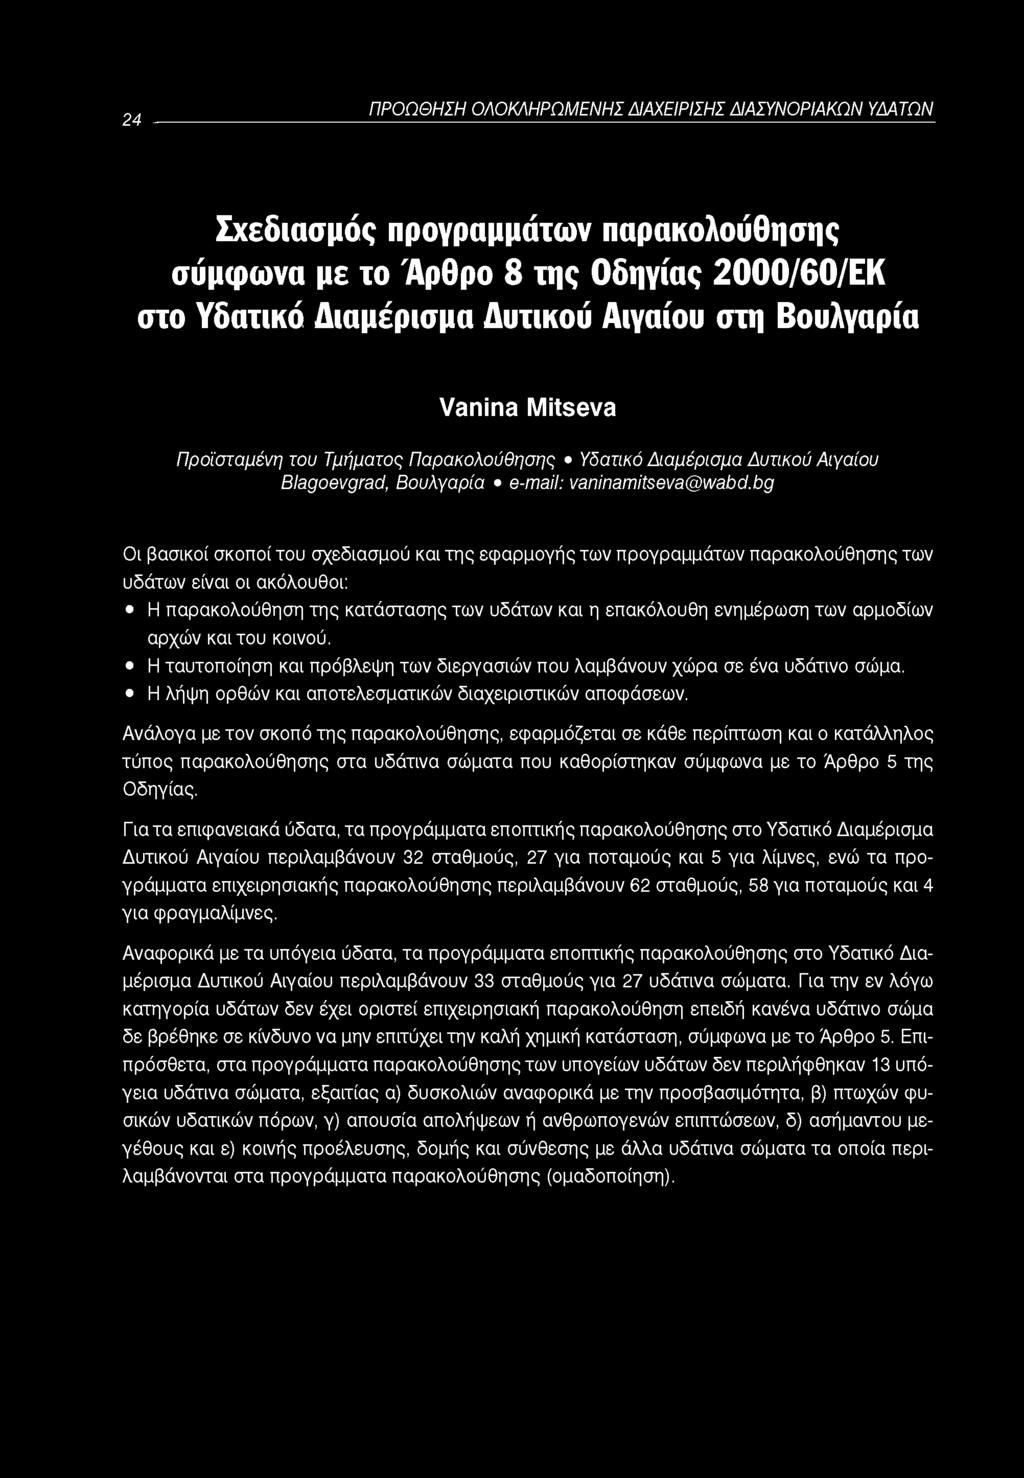 24 ΠΡΟΩΘΗΣΗ ΟΛΟΚΛΗΡΩΜΕΝΗΣ ΔΙΑΧΕΙΡΙΣΗΣ ΔΙΑΣΥΝΟΡΙΑΚΩΝ ΥΔΑΤΩΝ Σχεδιασμός προγραμμάτων παρακολούθησης σύμφωνα με το Άρθρο 8 της Οδηγίας 2000/60/ΕΚ στο Υδατικό Διαμέρισμα Δυτικού Αιγαίου στη Βουλγαρία